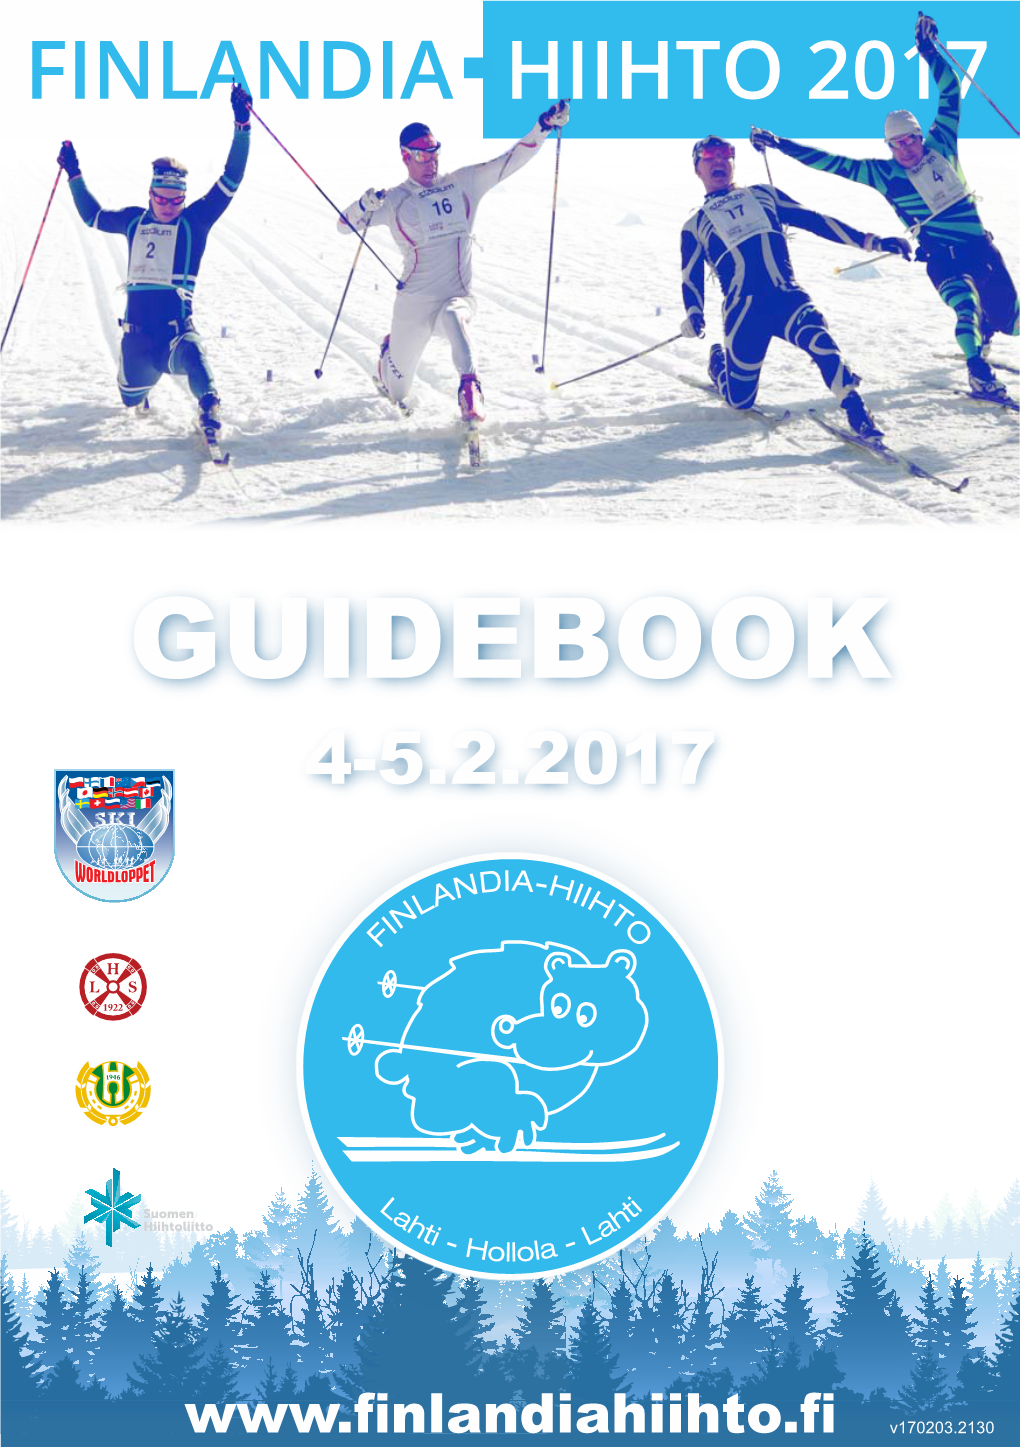 Guidebook 4-5.2.2017